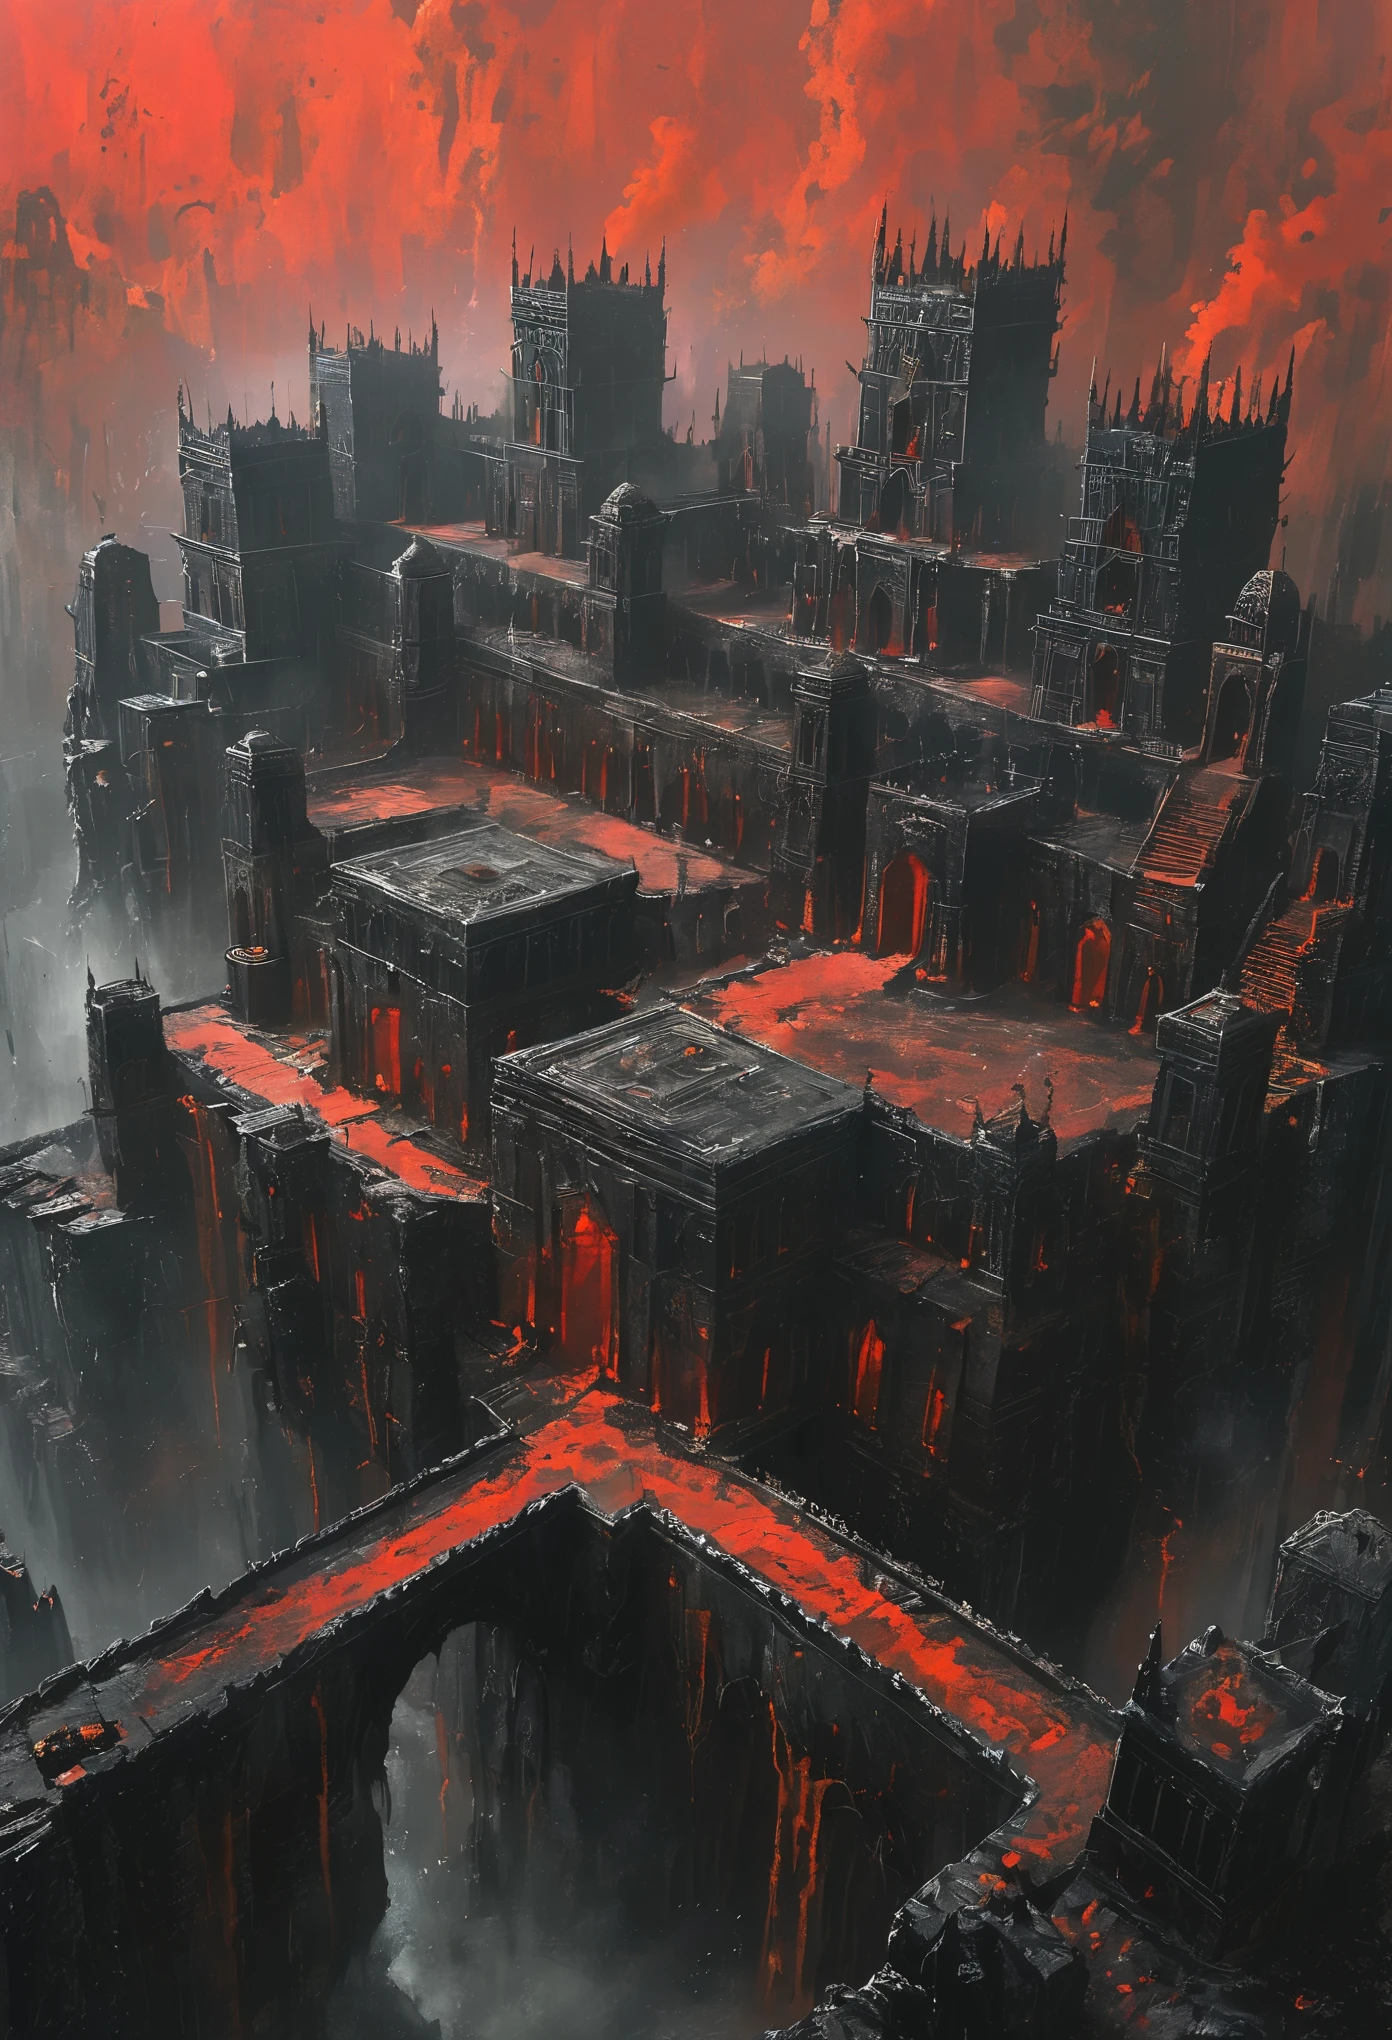 แนวคิดศิลปะของเมืองแฟนตาซียุคกลางโบราณที่สร้างขึ้นบนซากปรักหักพังของอีกเมืองหนึ่ง. ตัวอาคารทำด้วยหินสีดำและโลหะสีแดง, 